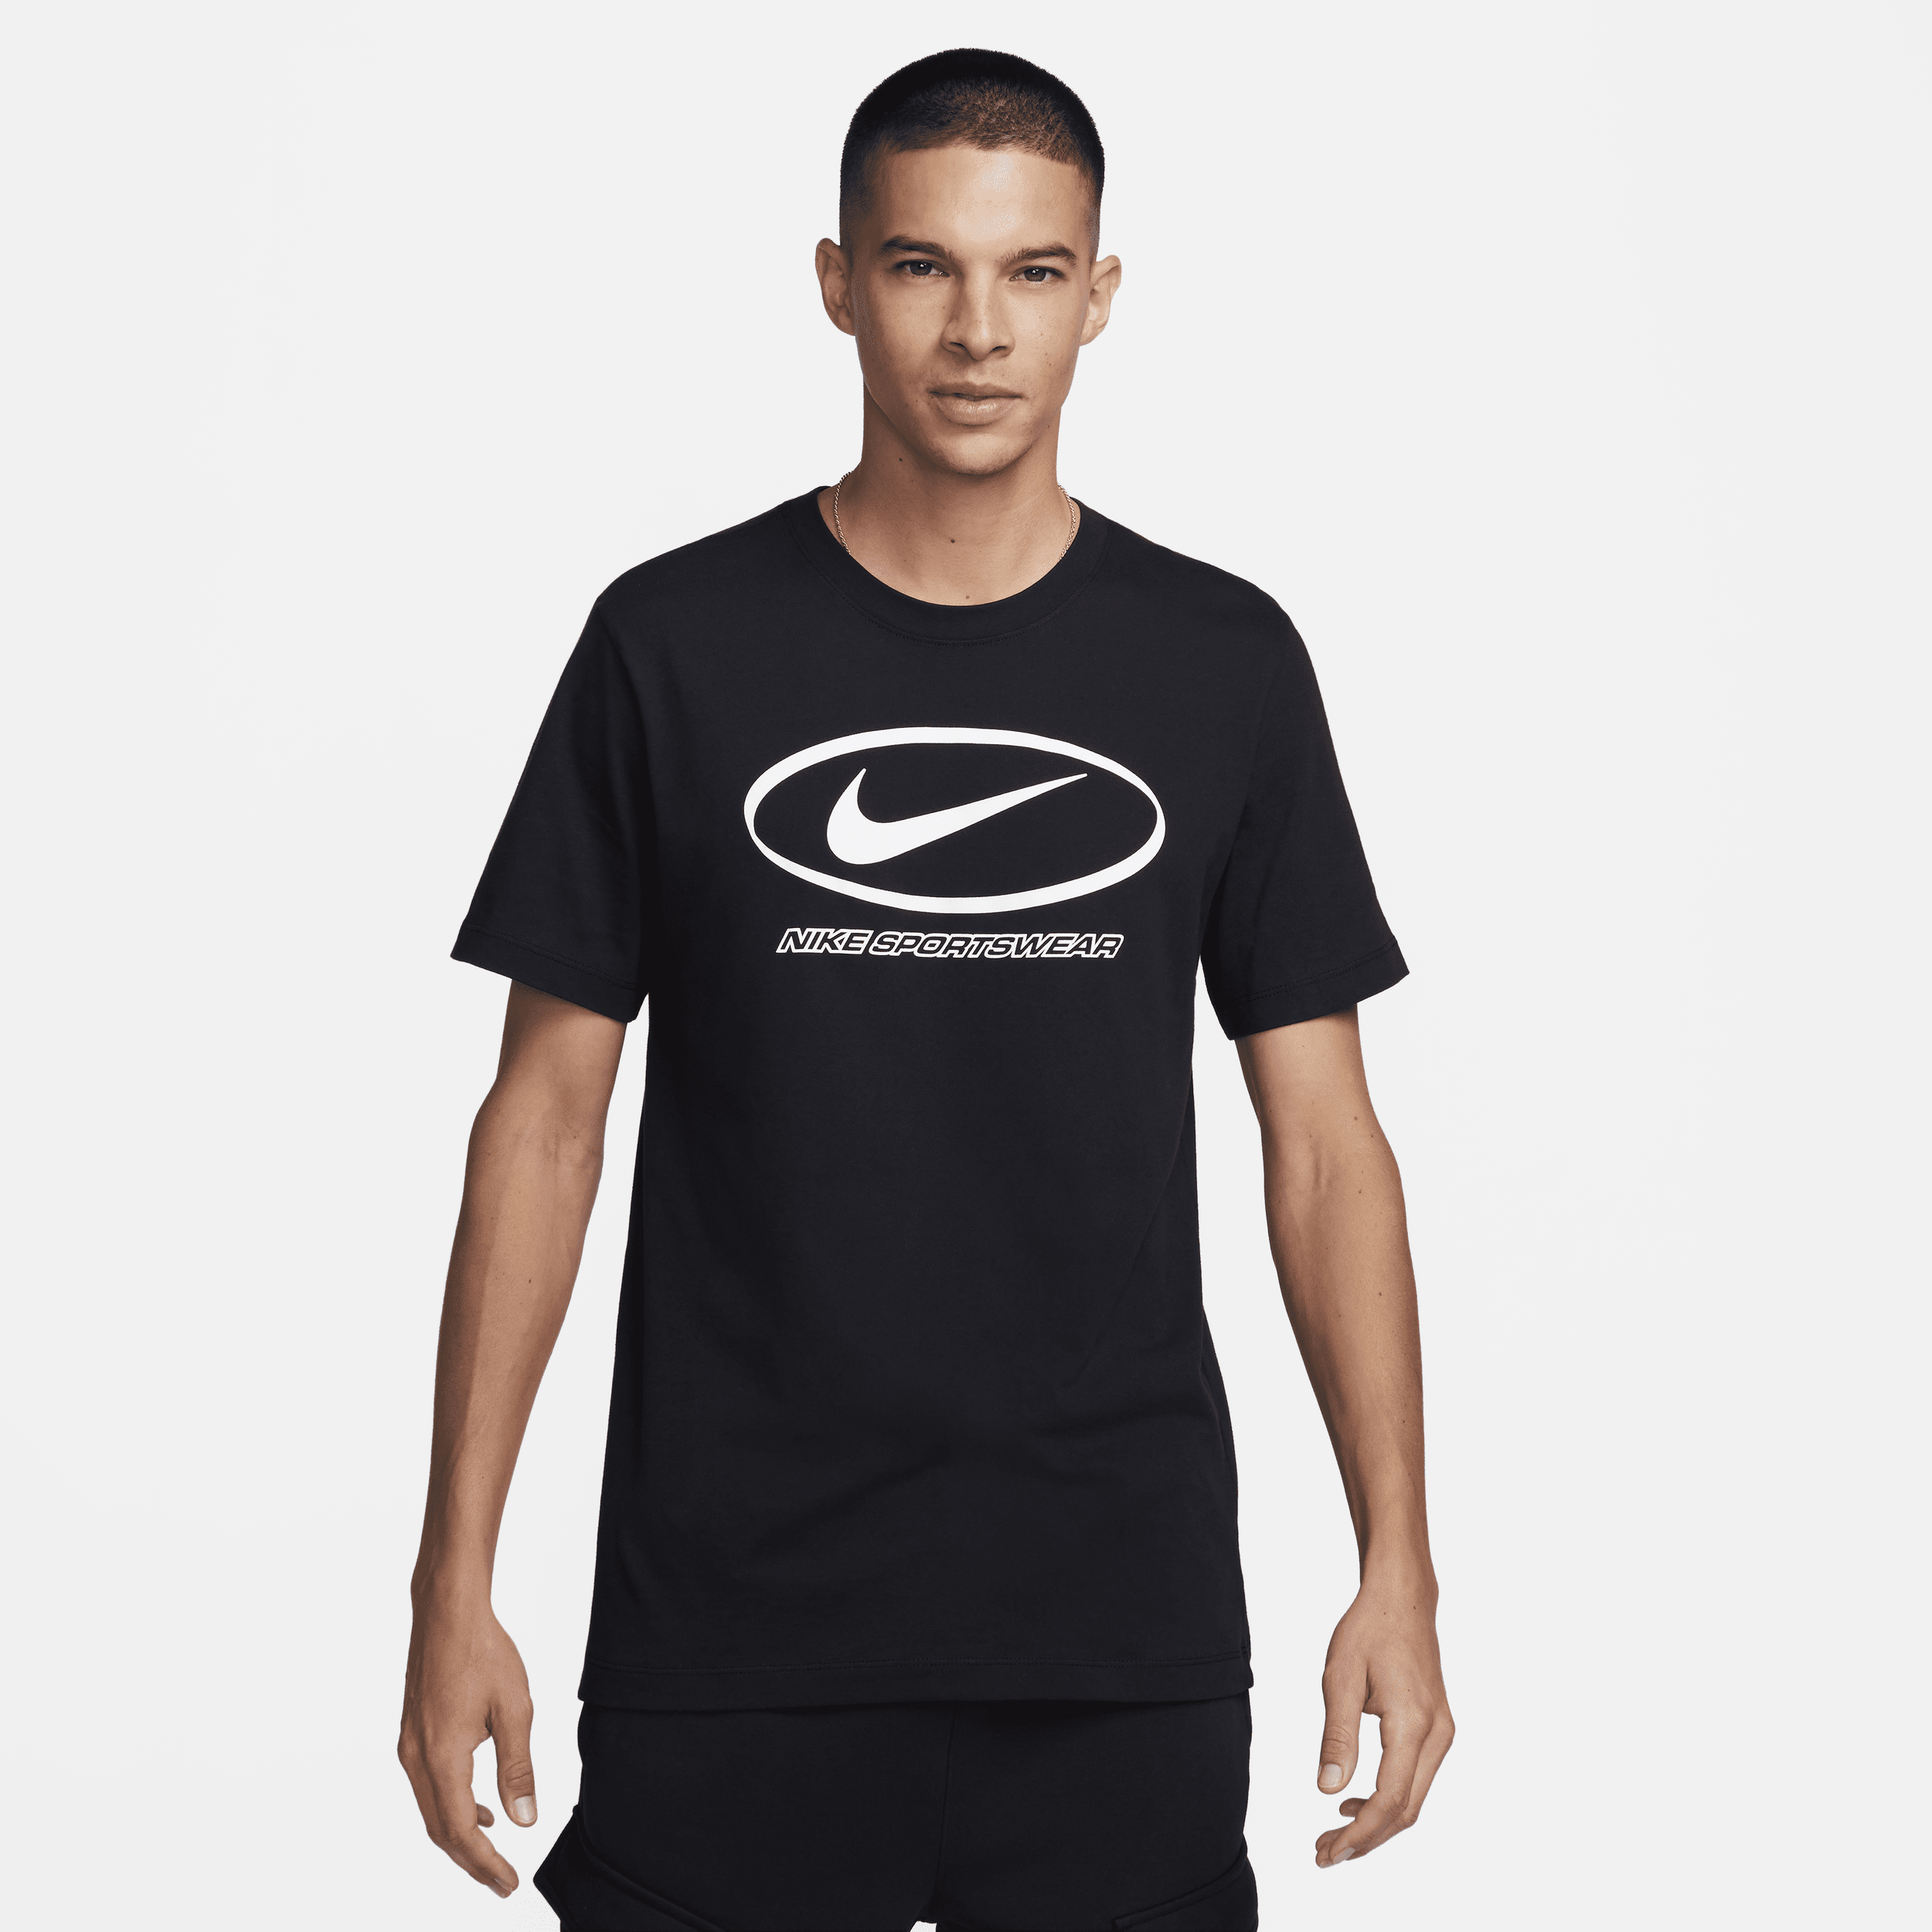 Nike Sportswear T-shirt met graphic voor heren - Zwart